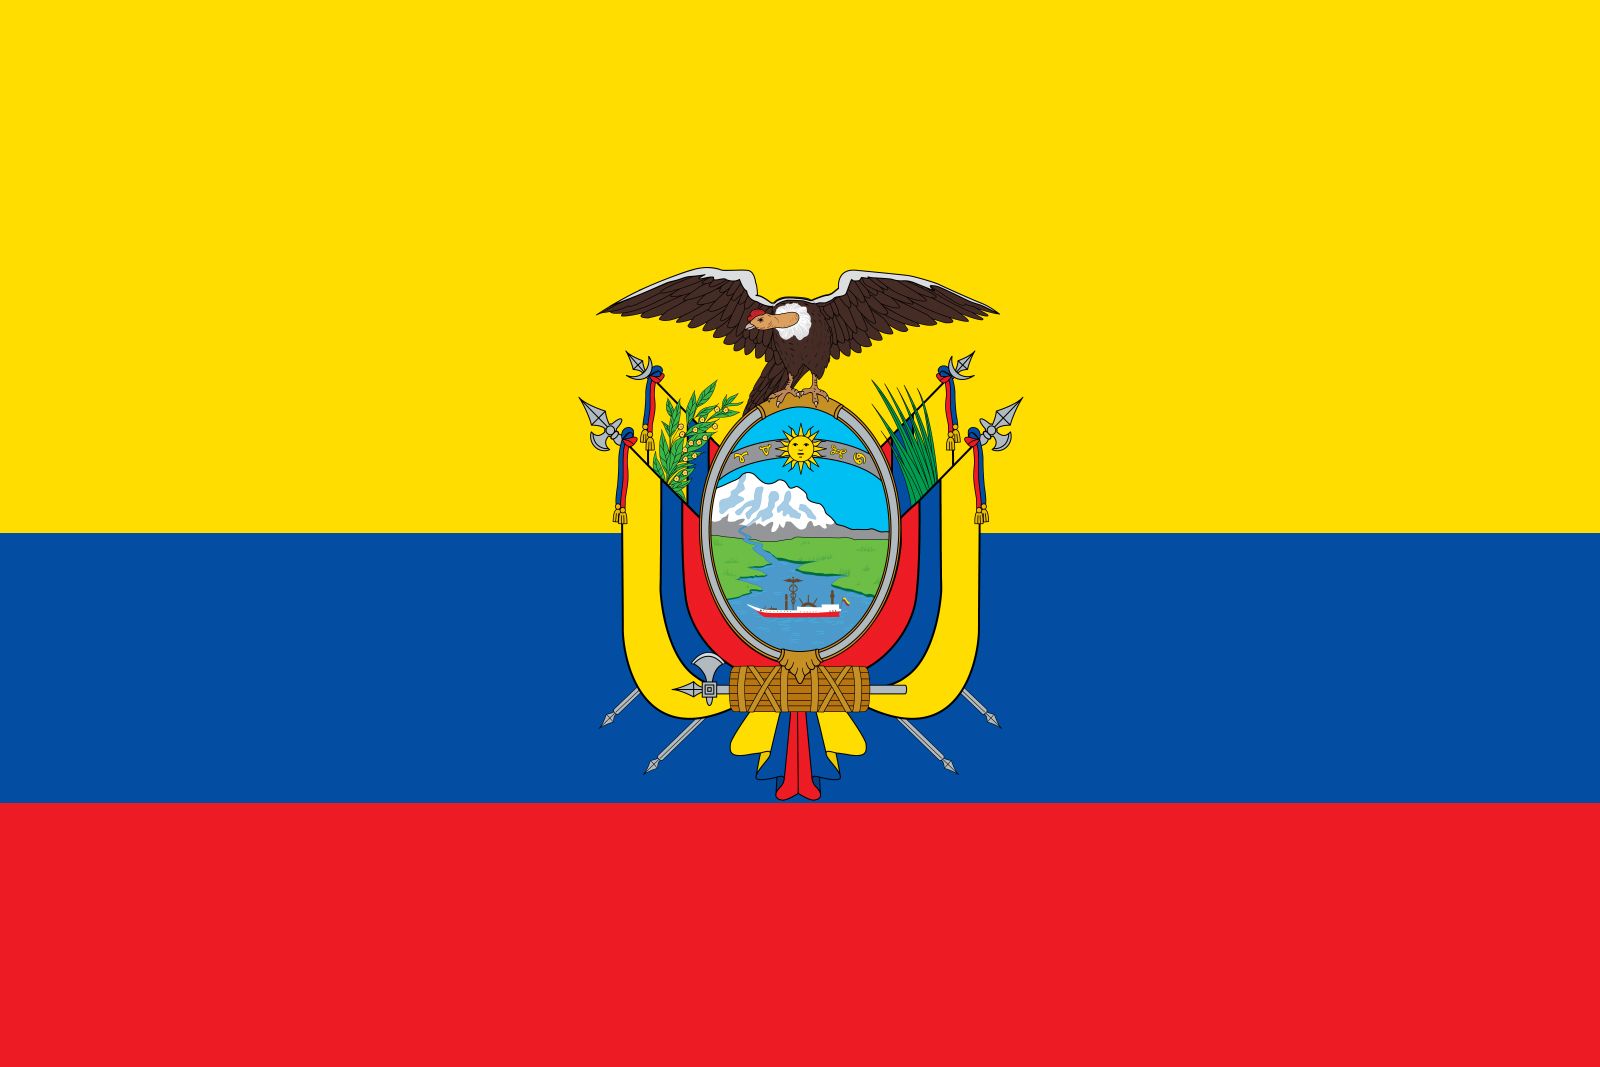  Ekvadorlular - Giriş, Yer, Dil, Folklor, Din, Əsas bayramlar, Keçid Ritləri